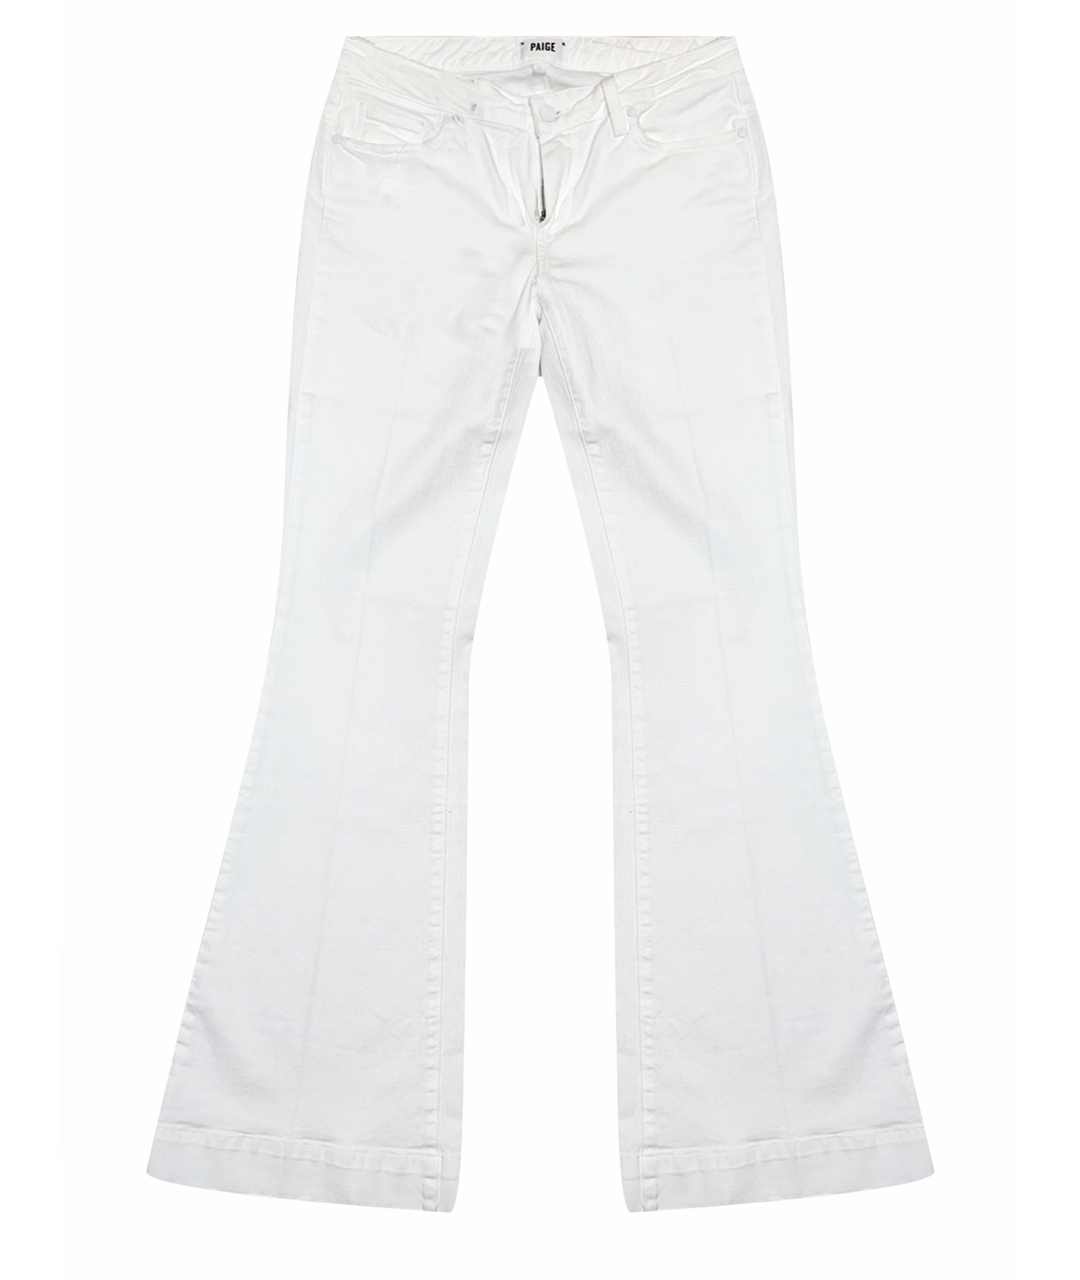 PAIGE Белые хлопковые джинсы клеш, фото 1